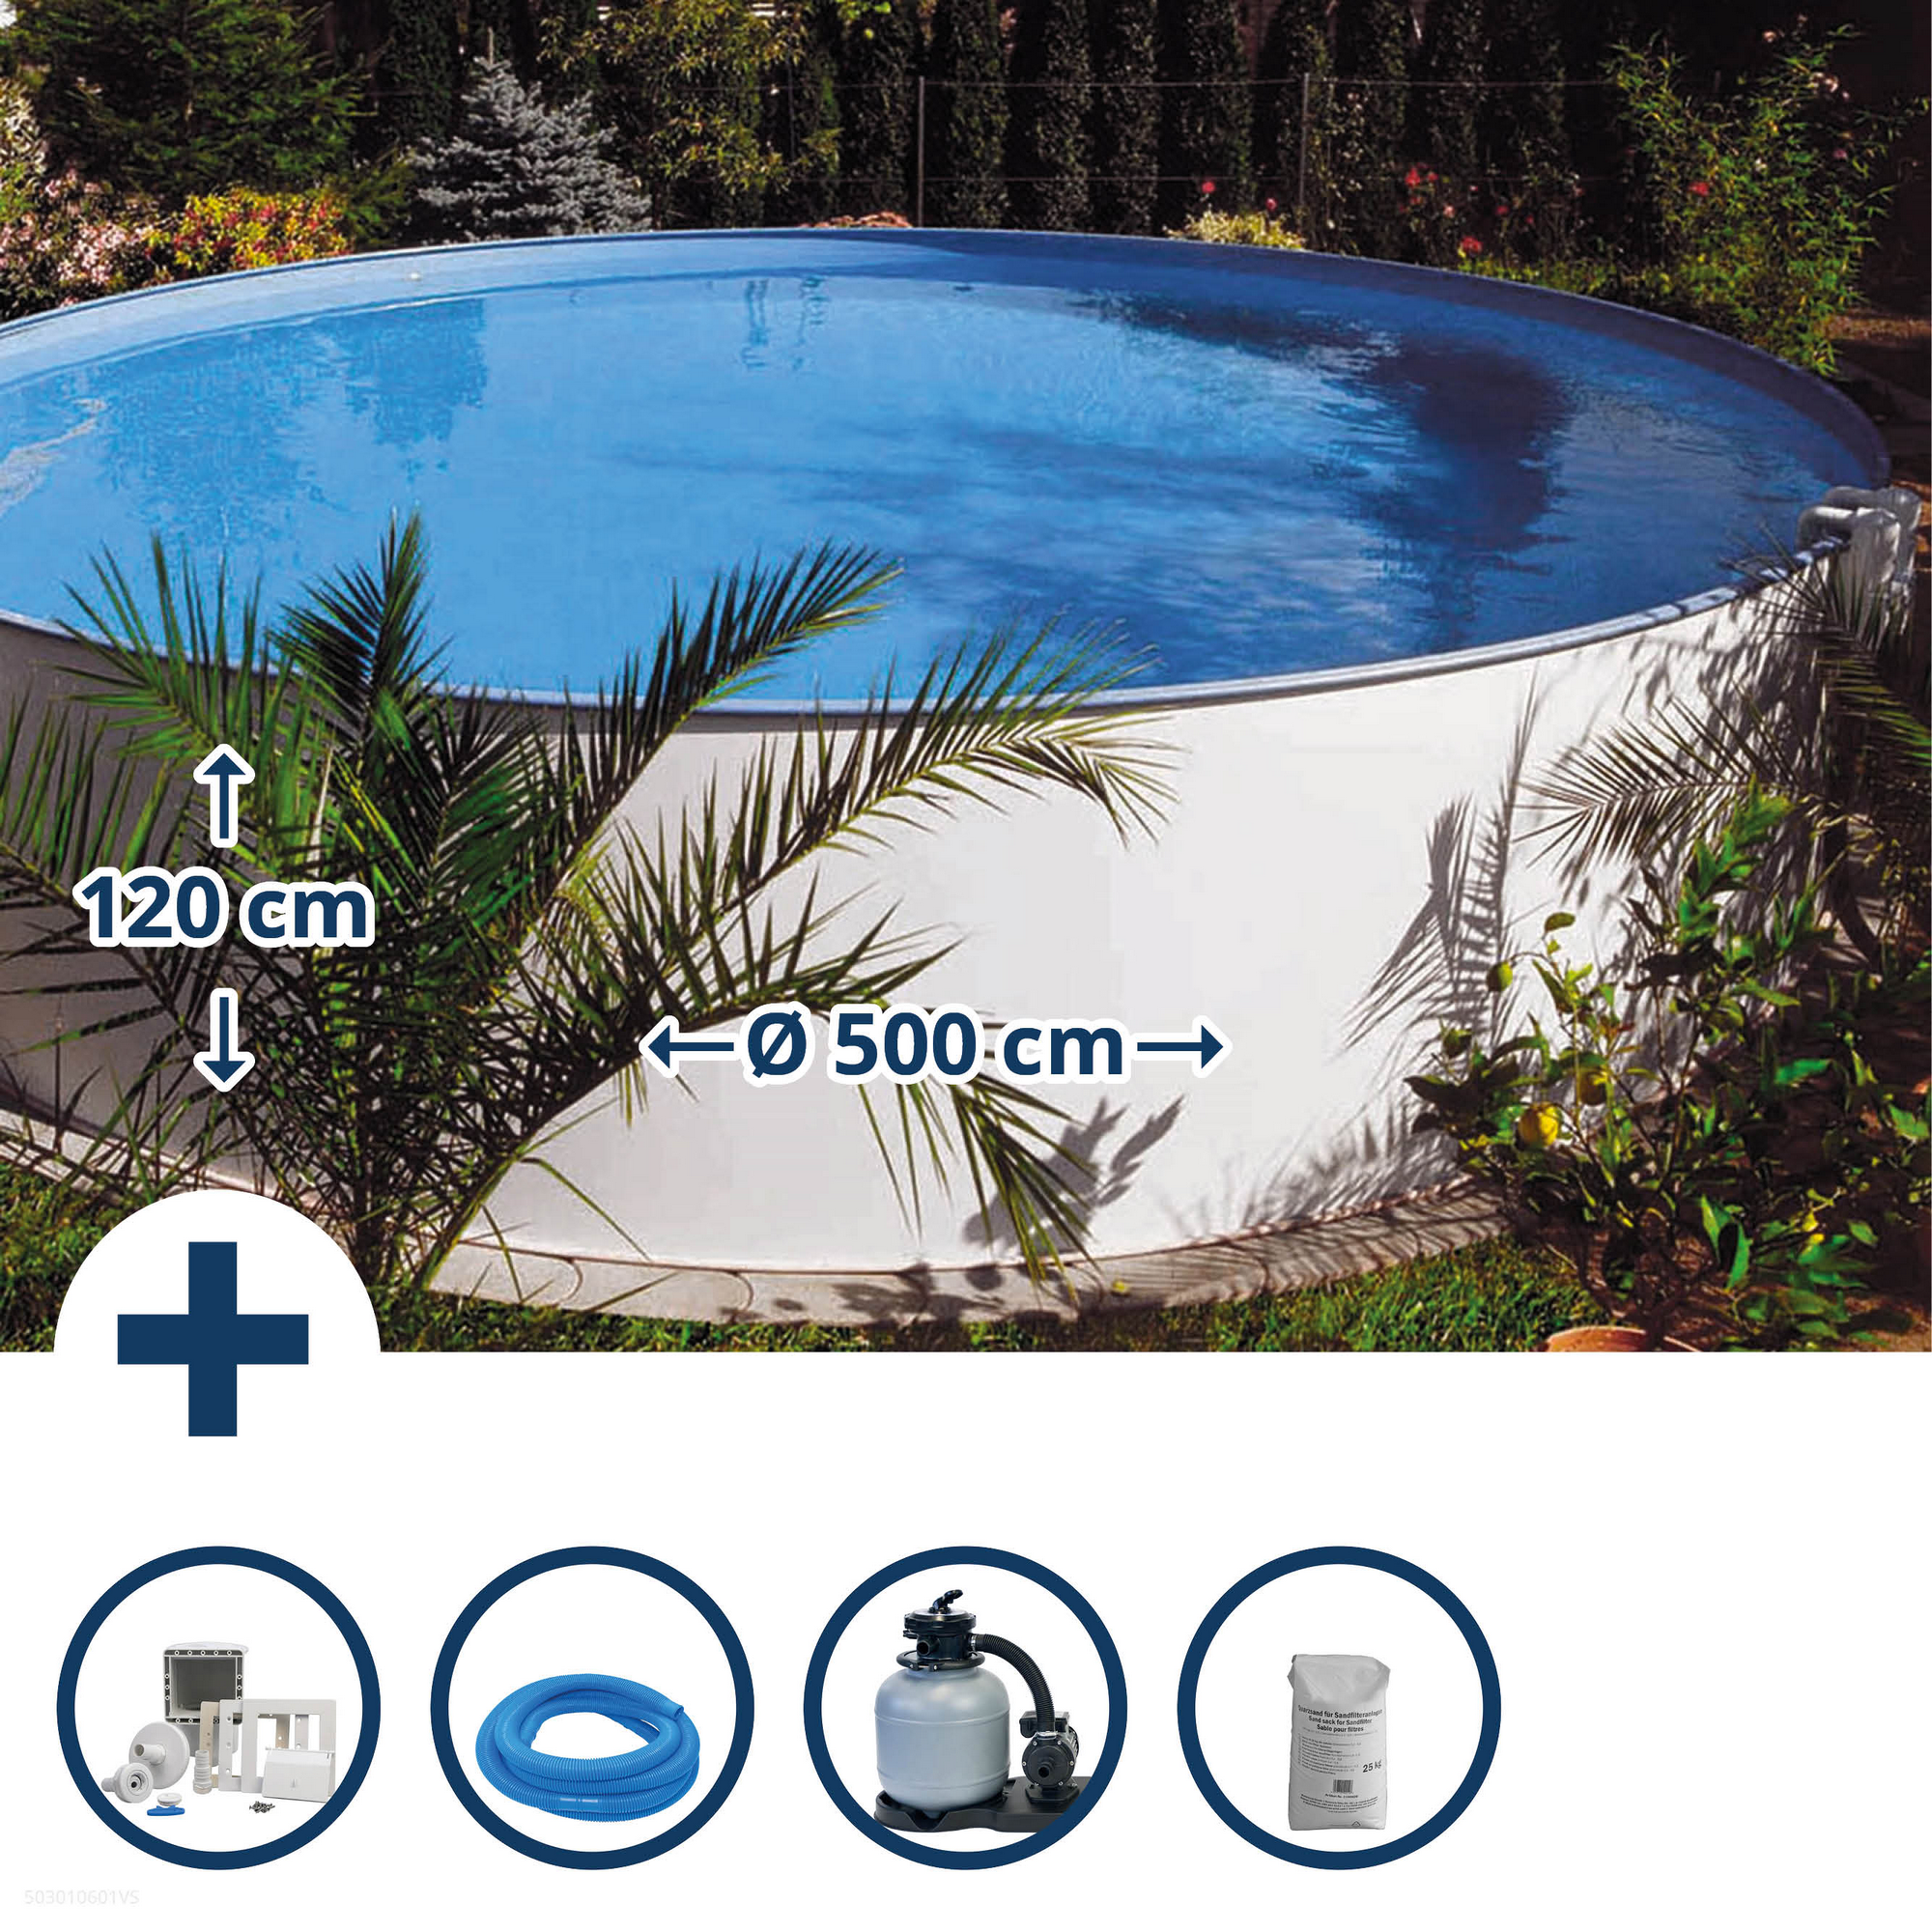 Aufstellpool-Set 'Exclusiv 7' weiß/blau Ø 500 x 120 cm + product picture